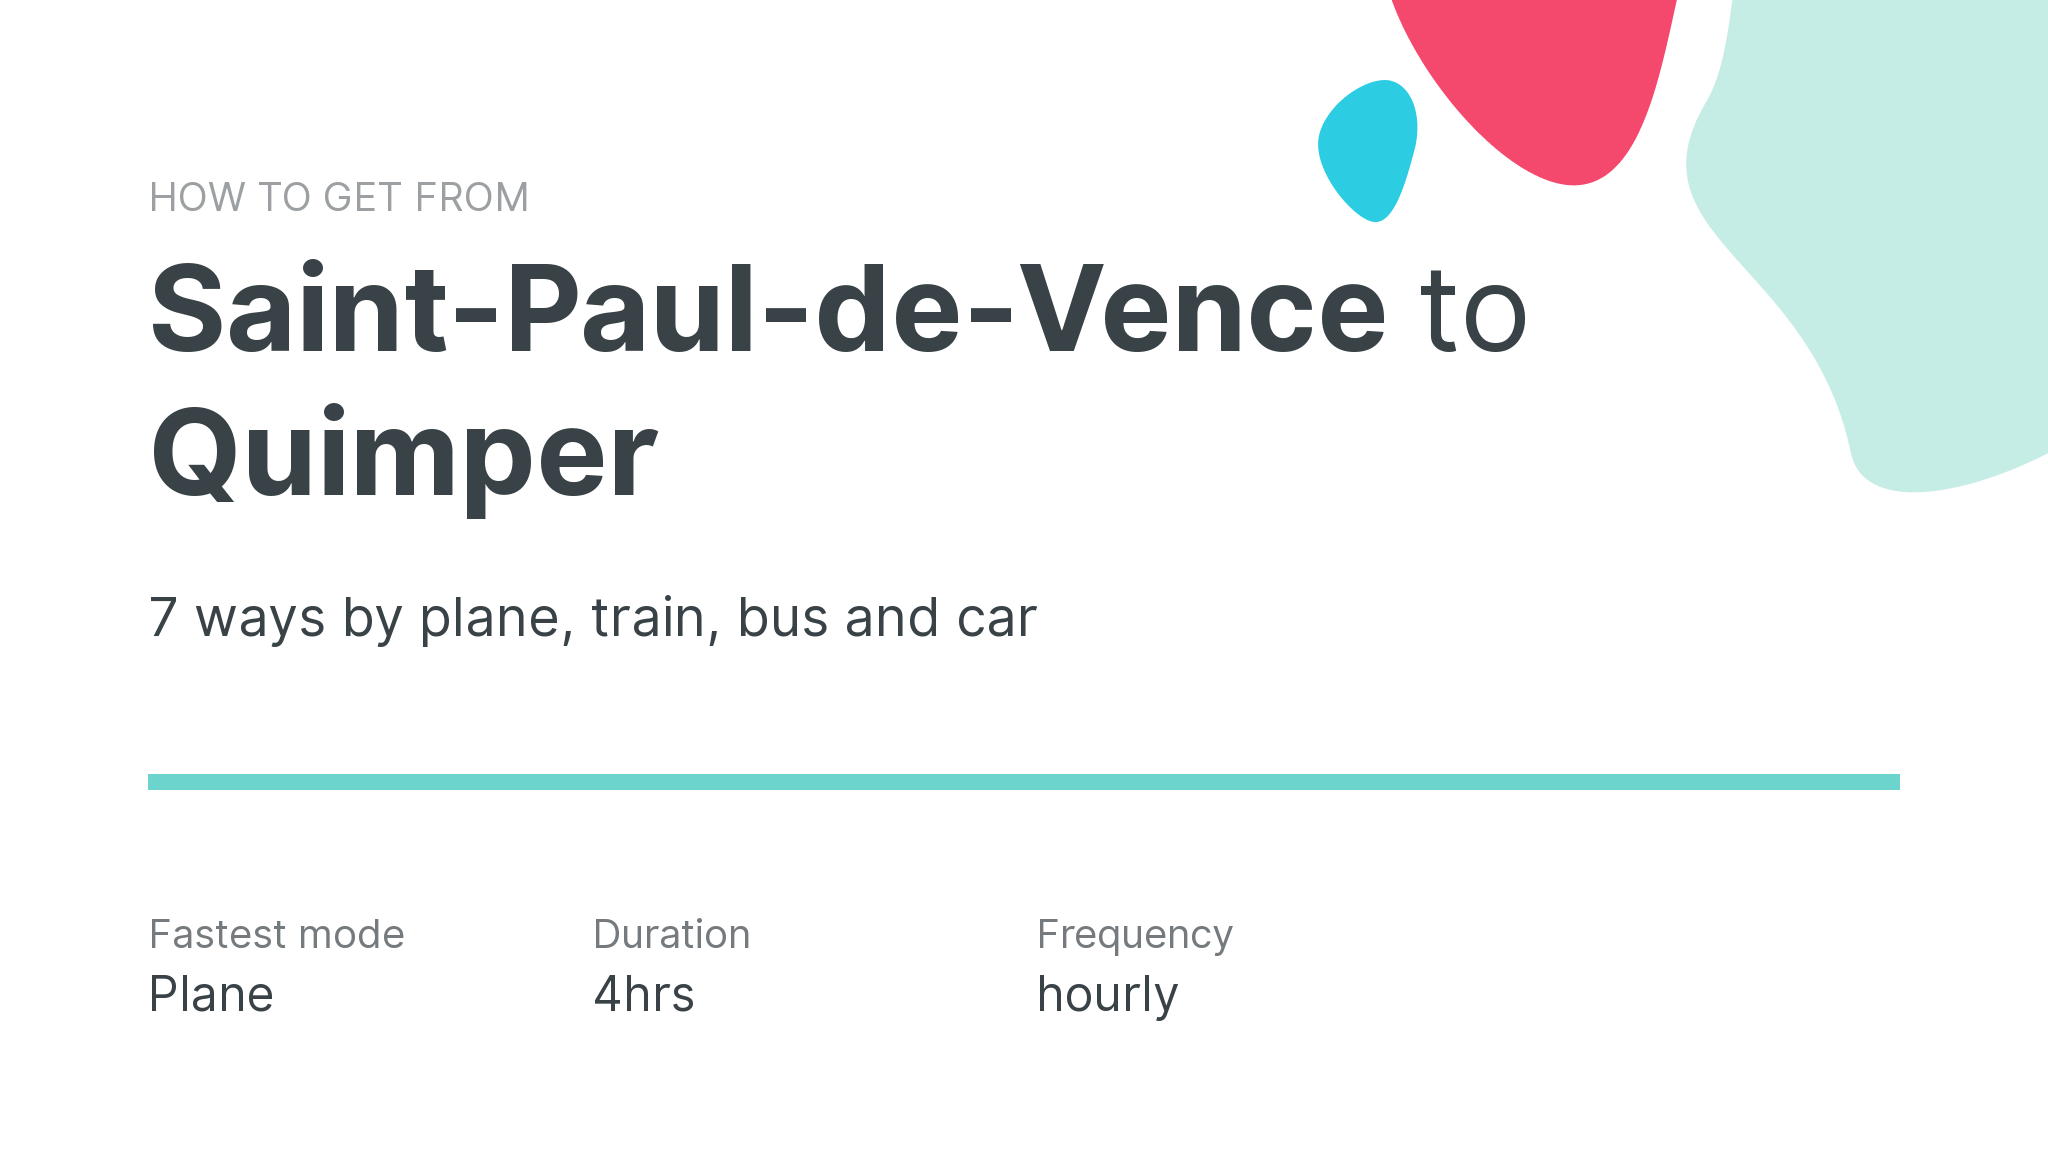 How do I get from Saint-Paul-de-Vence to Quimper